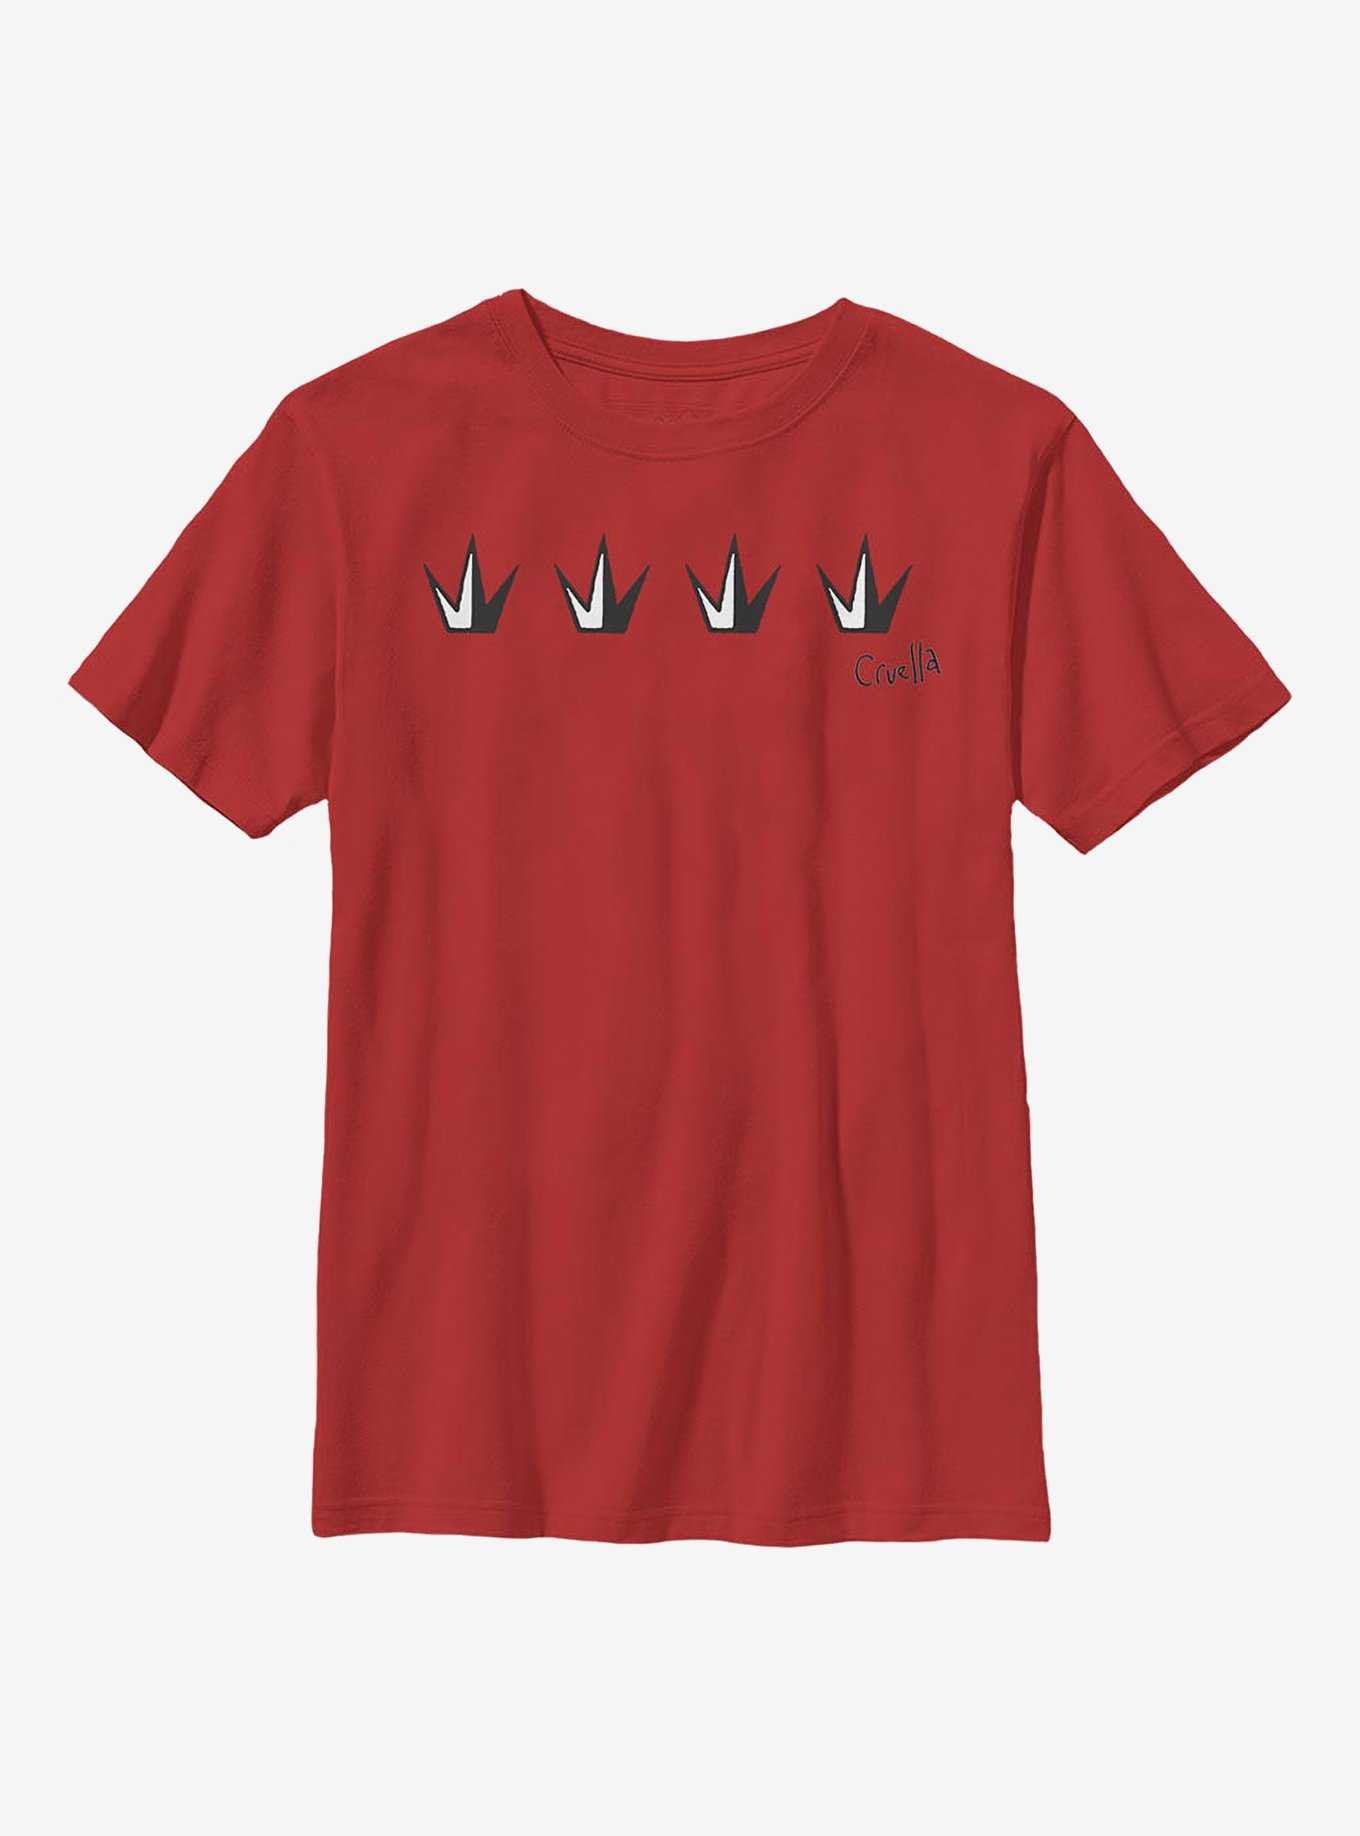 Disney Cruella Crowns Youth T-Shirt, , hi-res